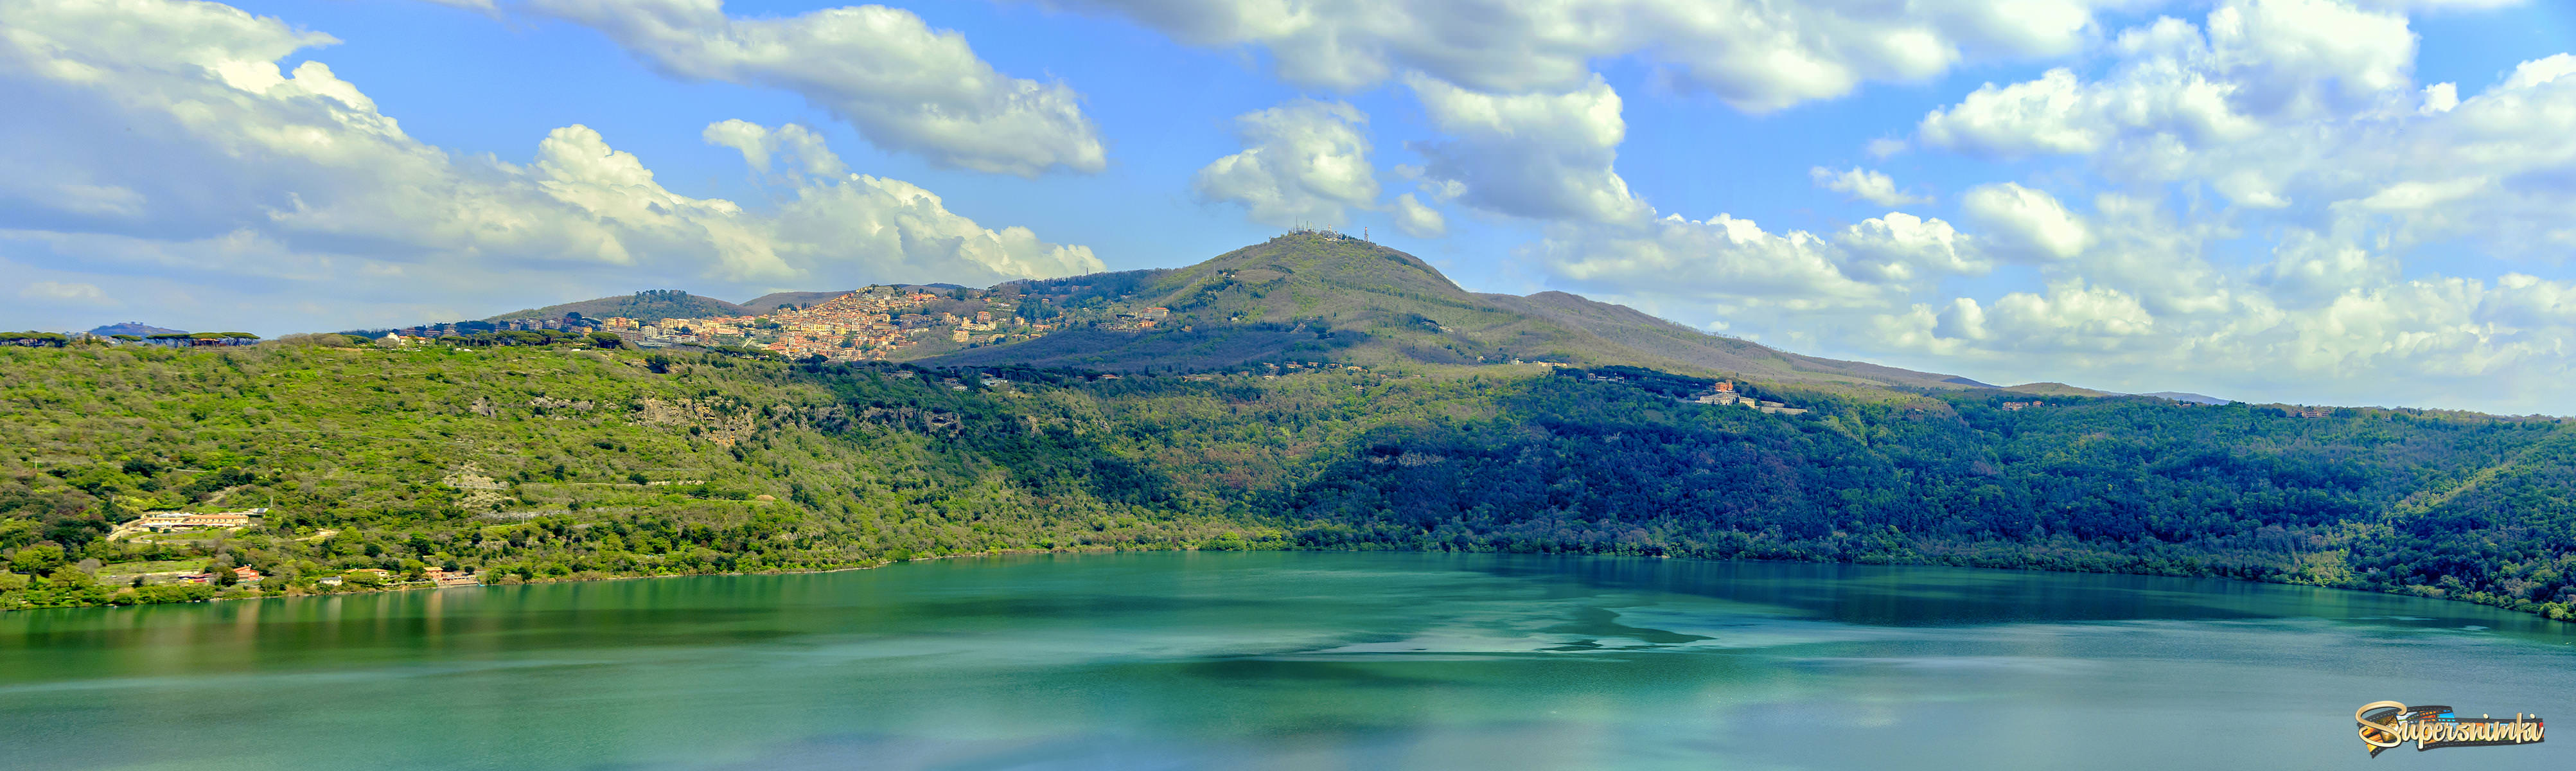 Провинциальная Италия. Озеро Альбано #2